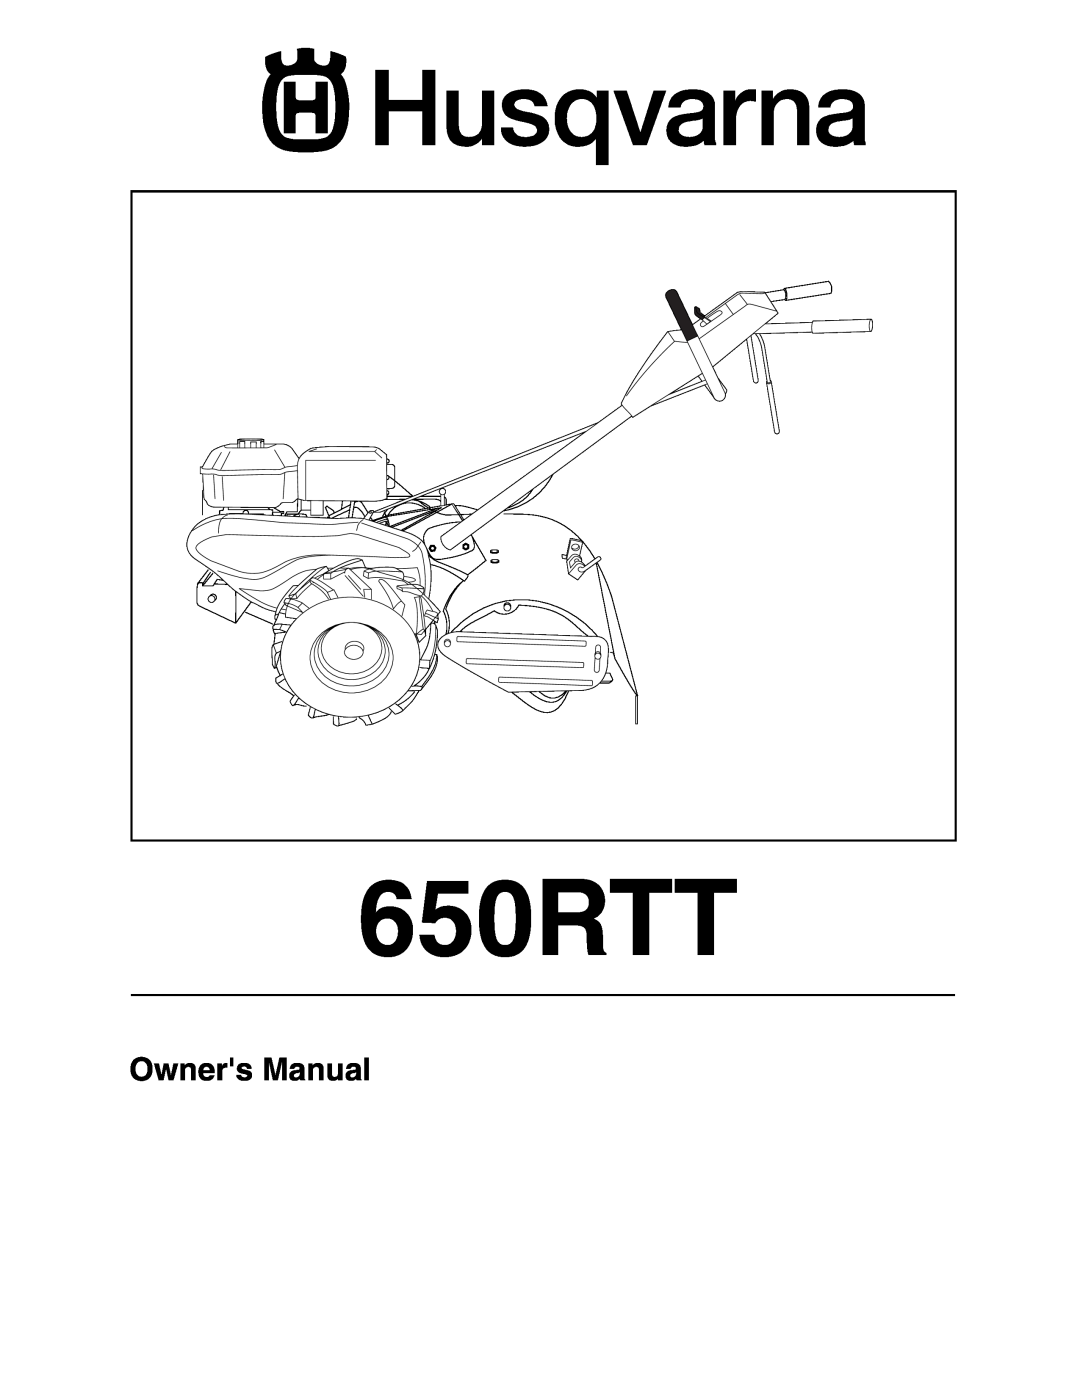 Husqvarna 650RTT owner manual 